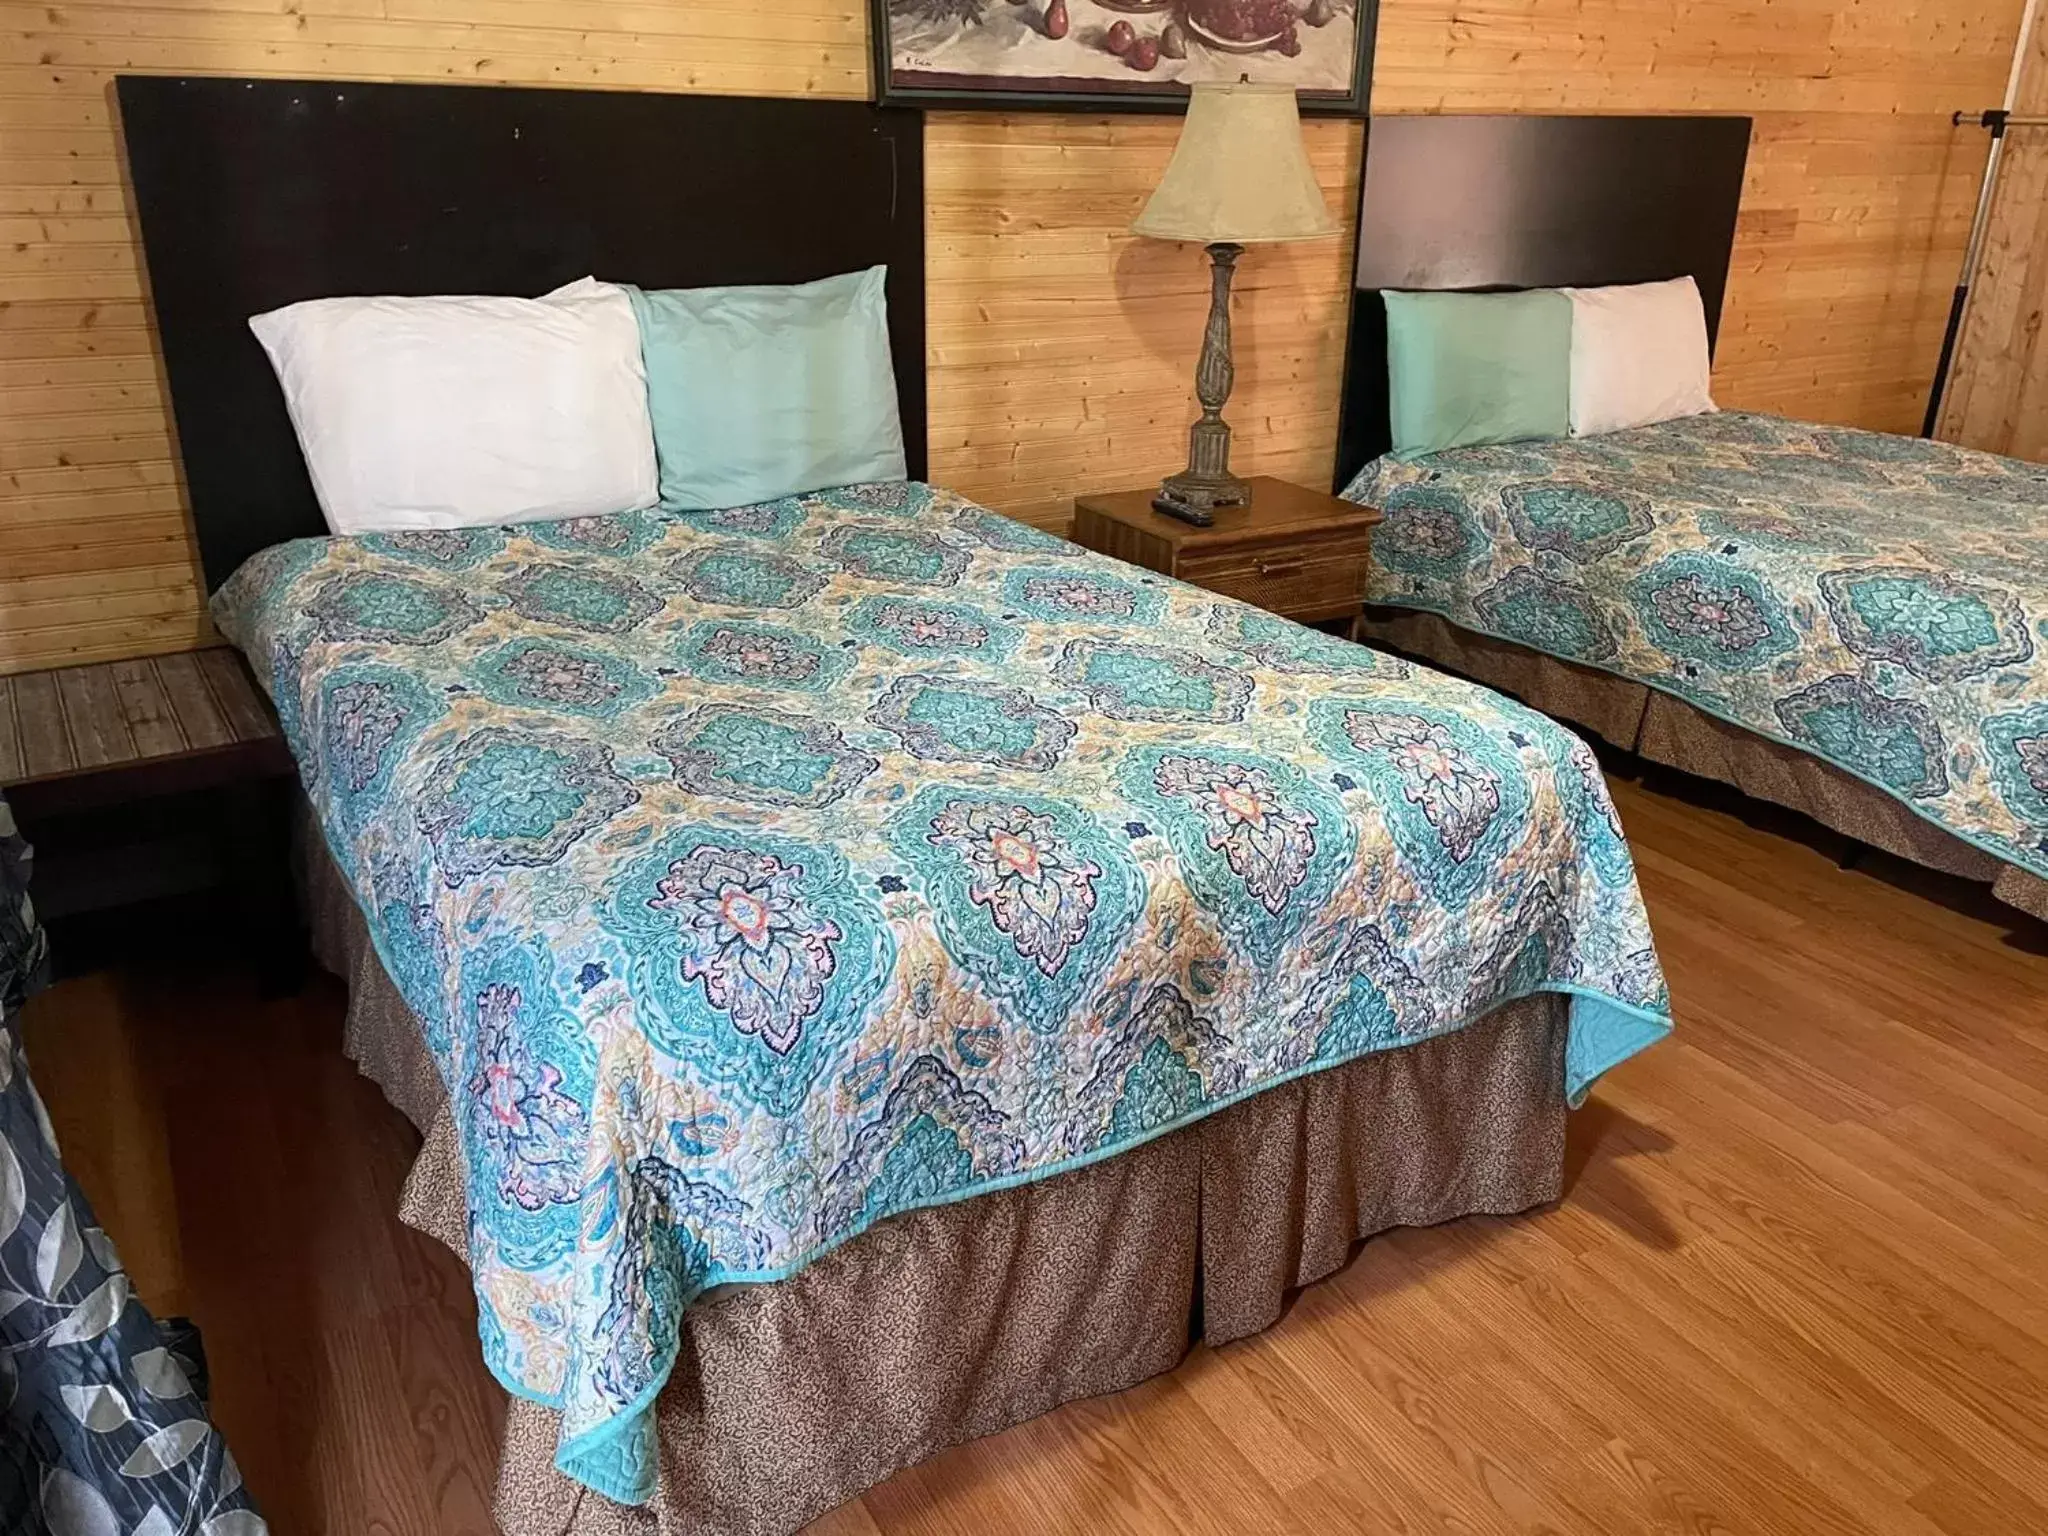 Bed in Fiesta City Motel